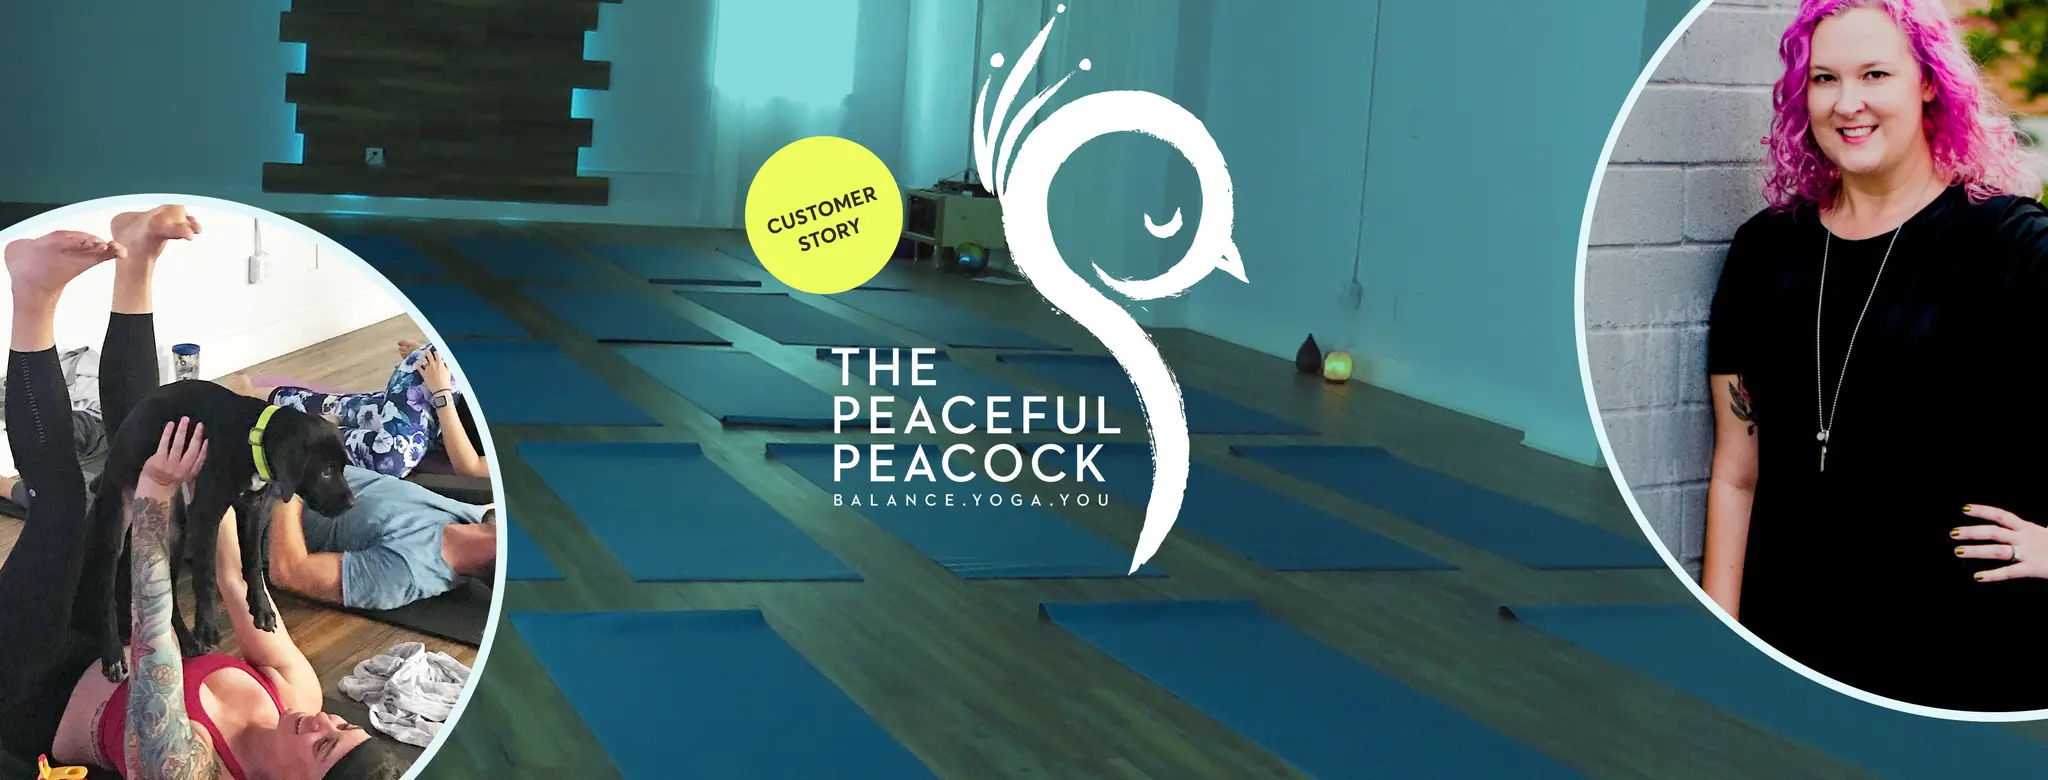 Peaceful Peacock yoga 